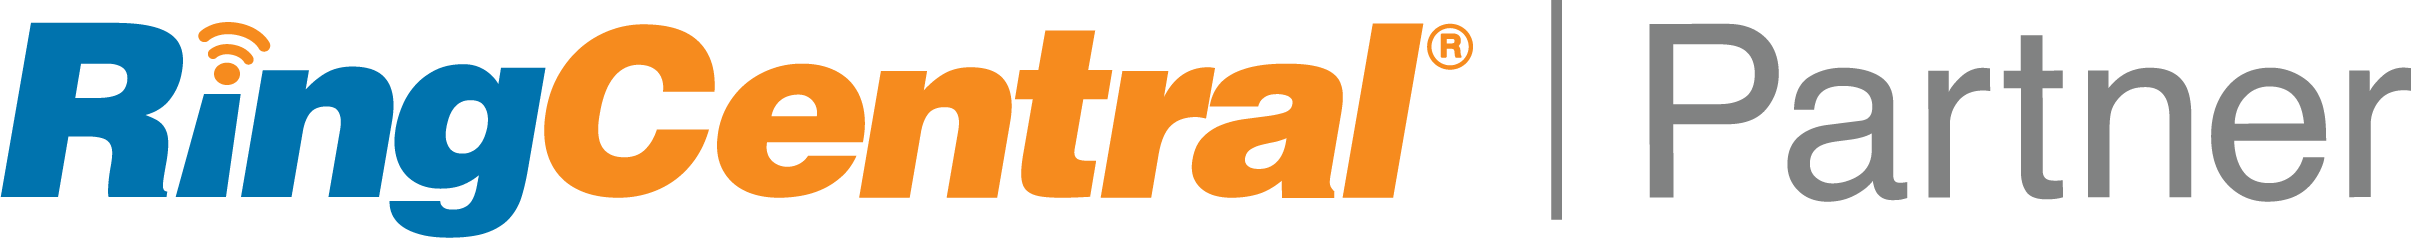 ringcentral partner logo